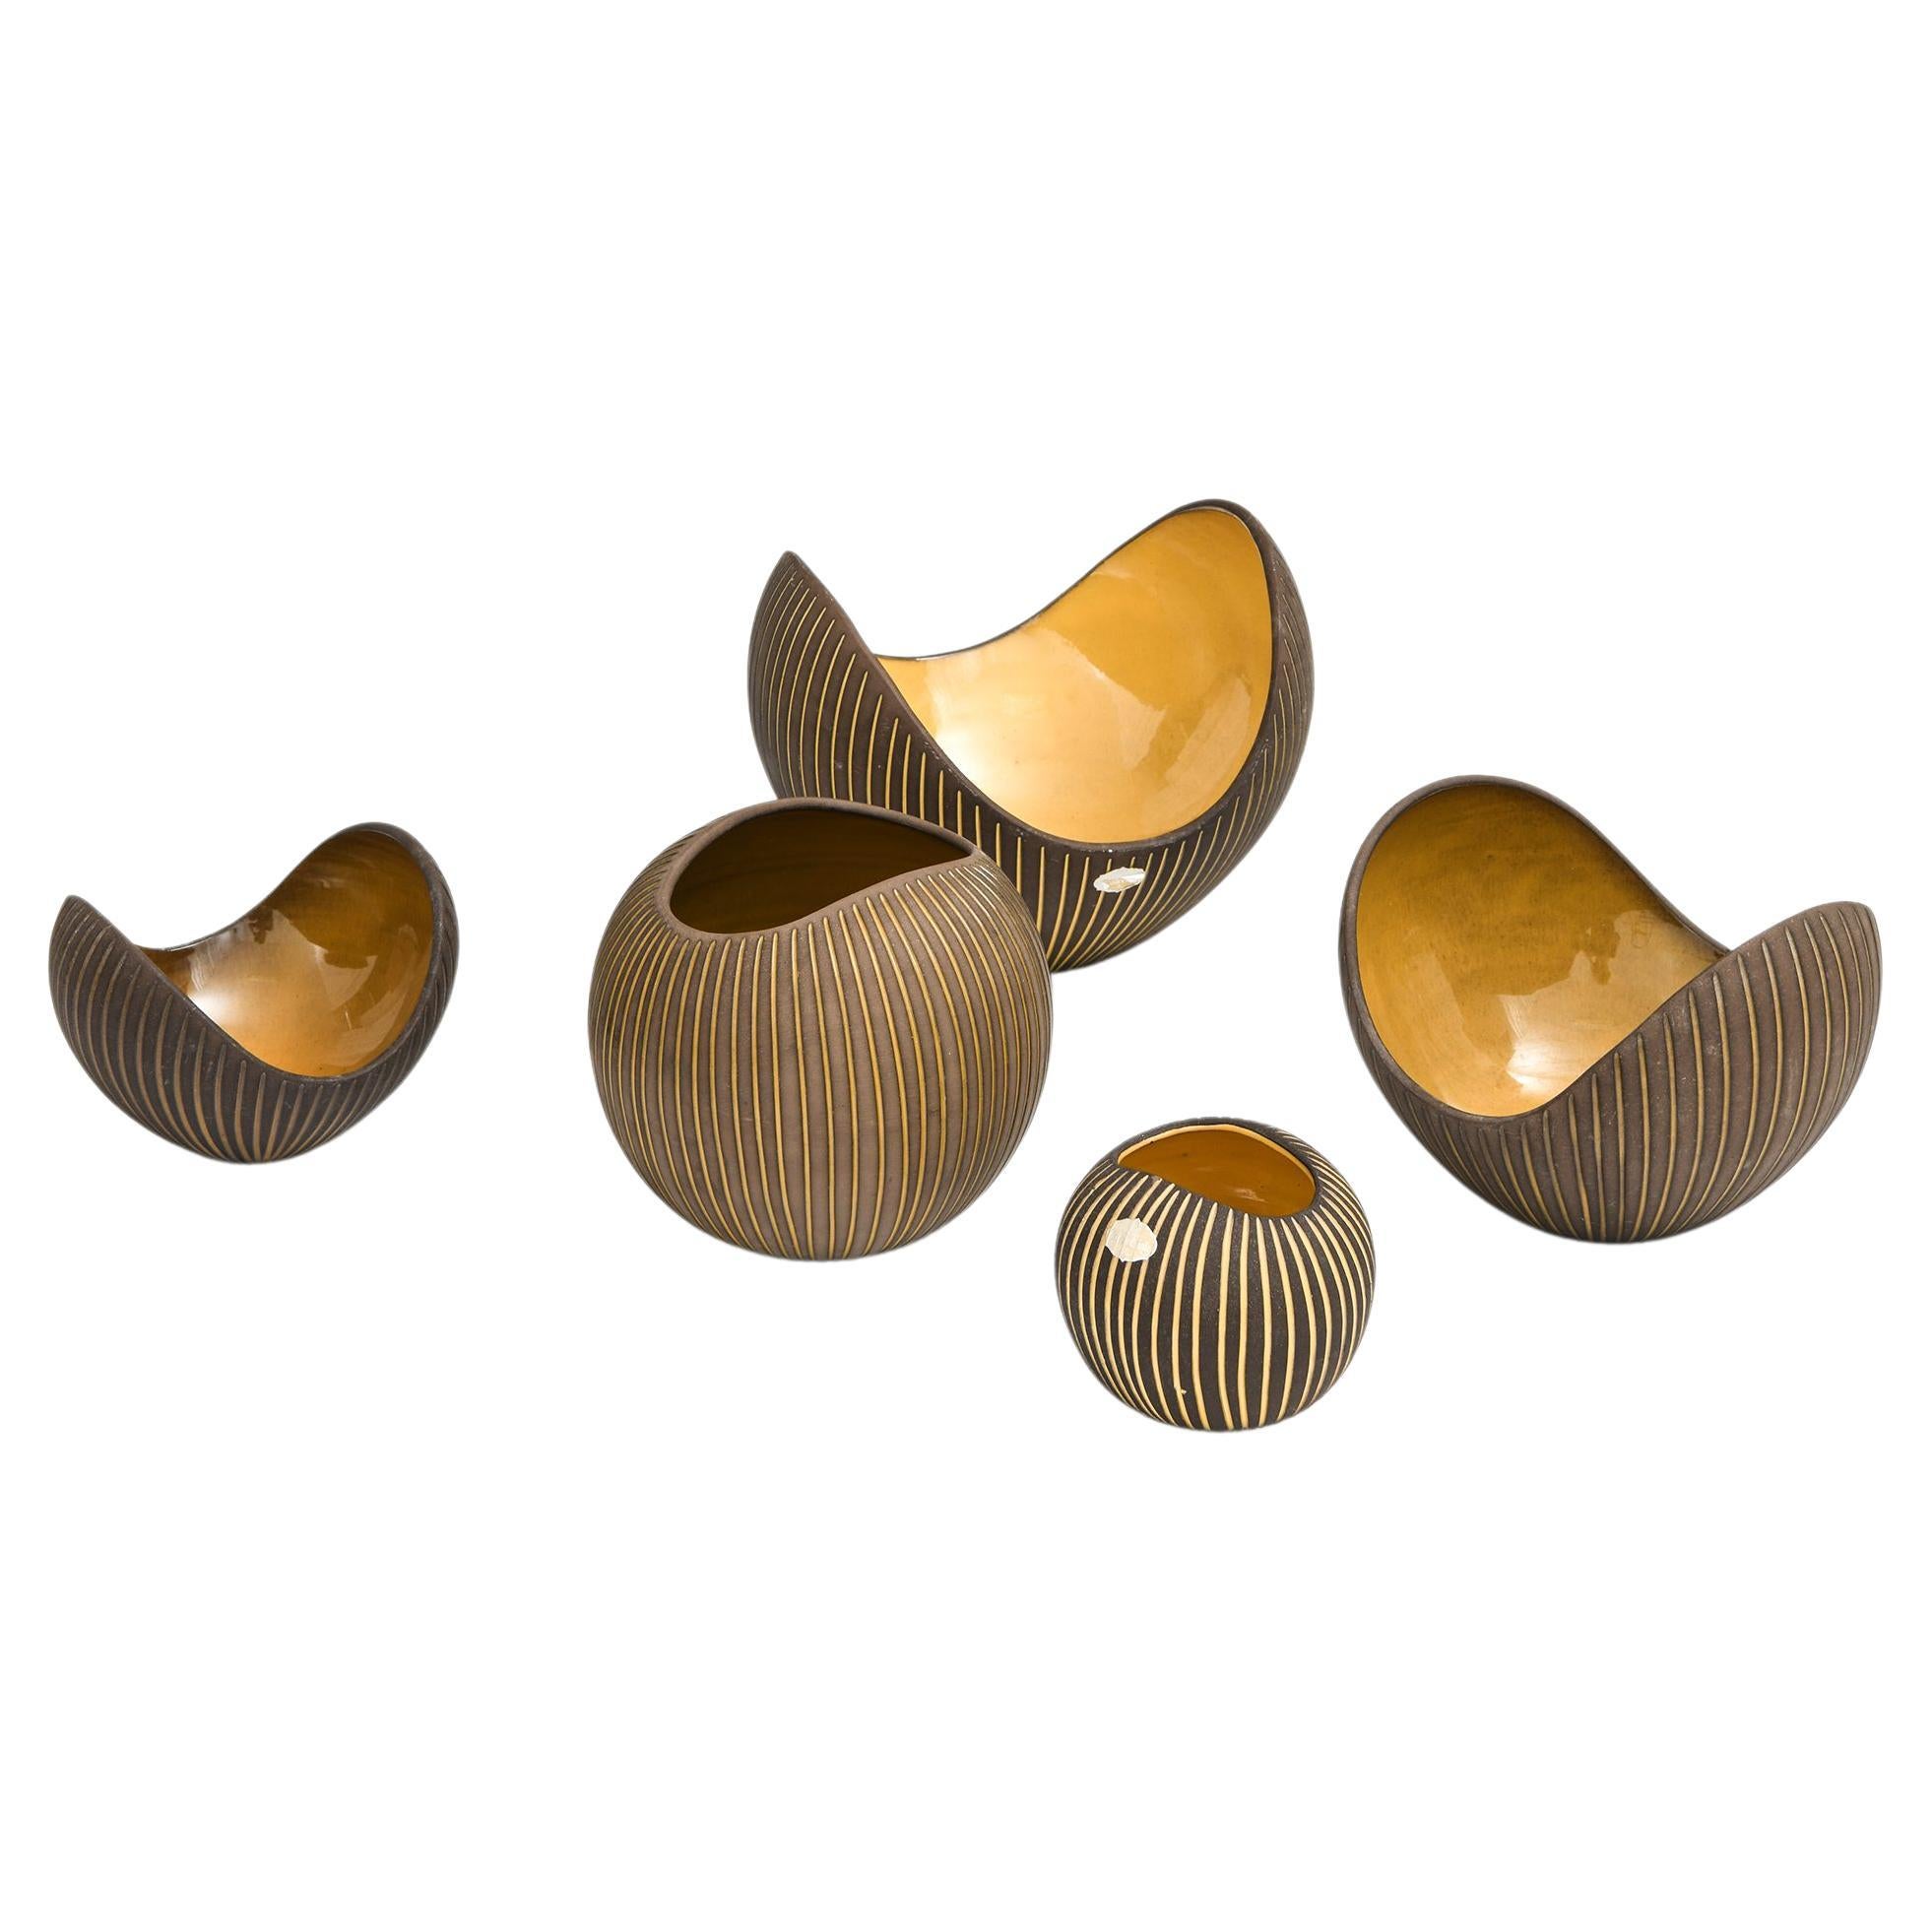 Set of 5 Ceramic Bowls by Hjördis Oldfors, 1950's